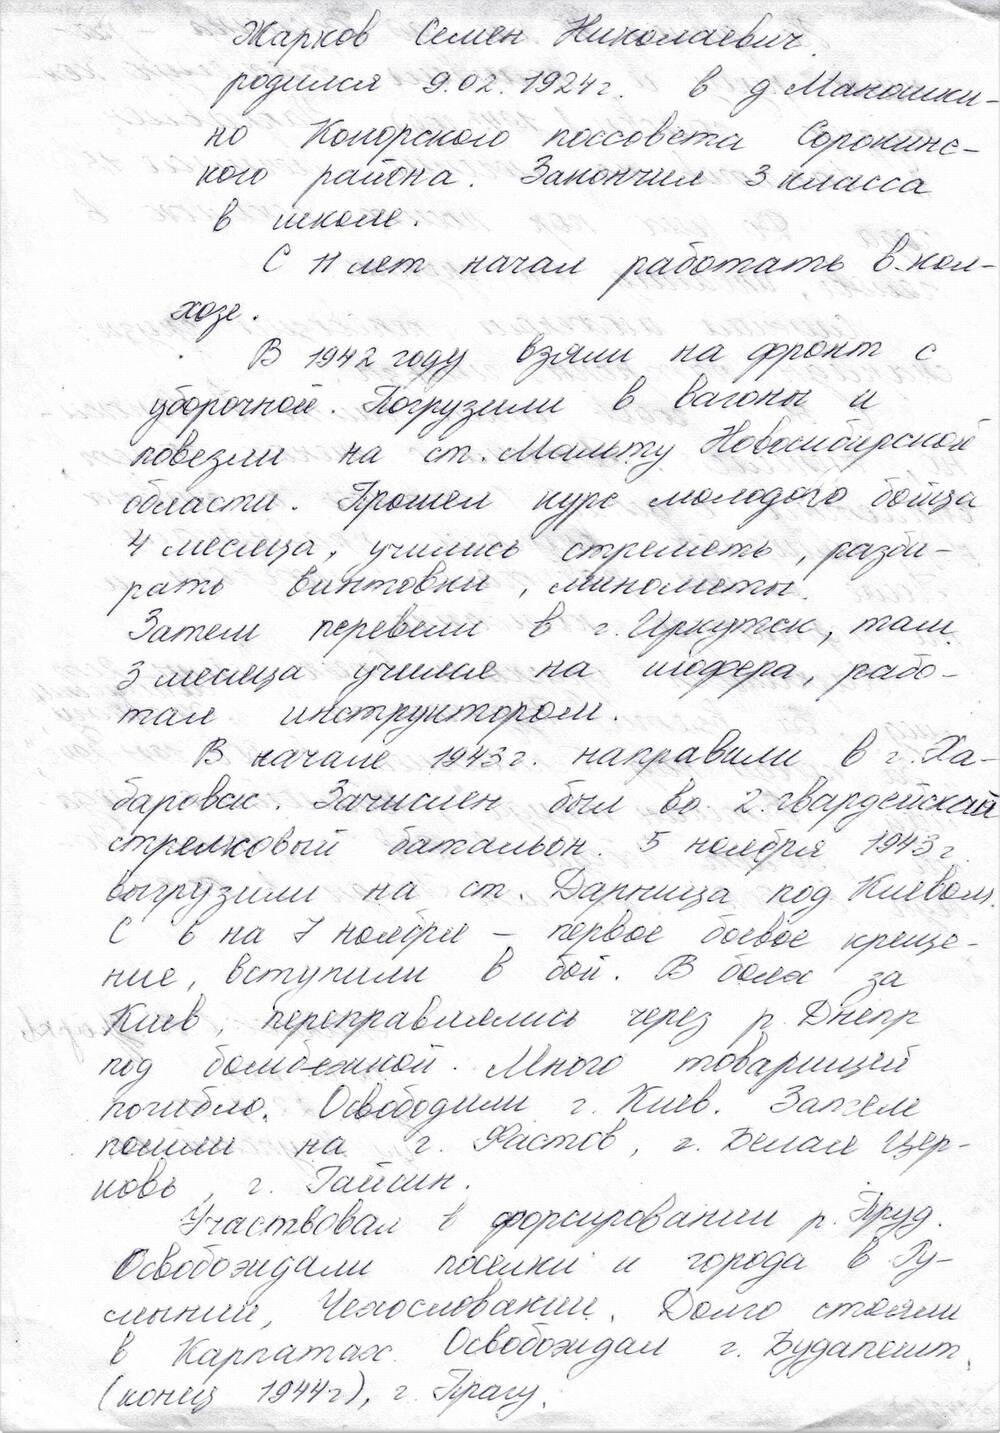 Воспоминания Жаркова Семена Николаевича - ветерана Великой Отечественной войны 1941-1945 гг.